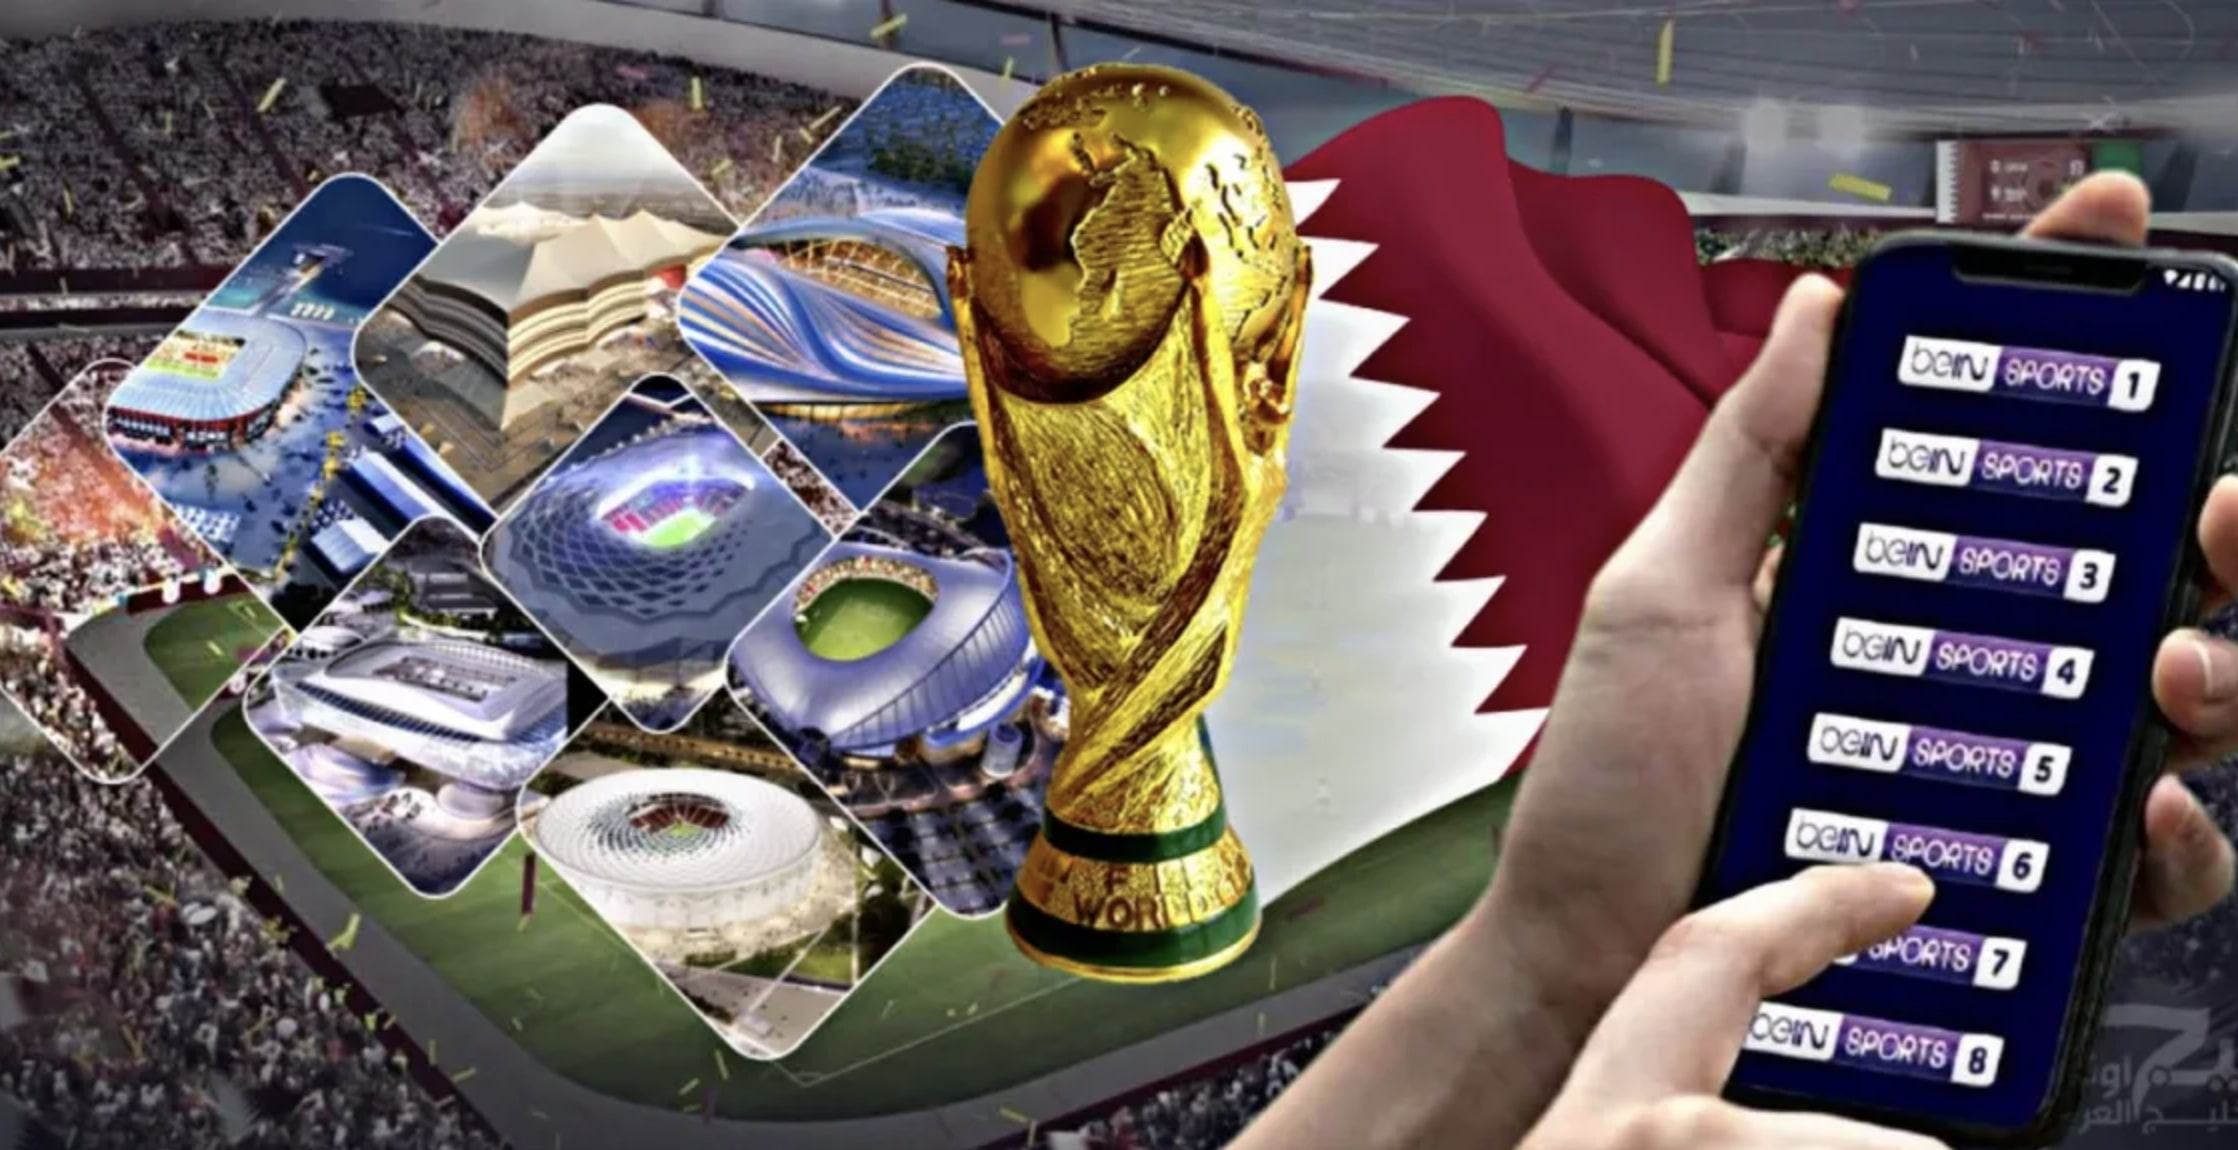 مشاهدة مباريات كأس العالم عبر القنوات الناقلة لكأس العالم 2022 مجانا